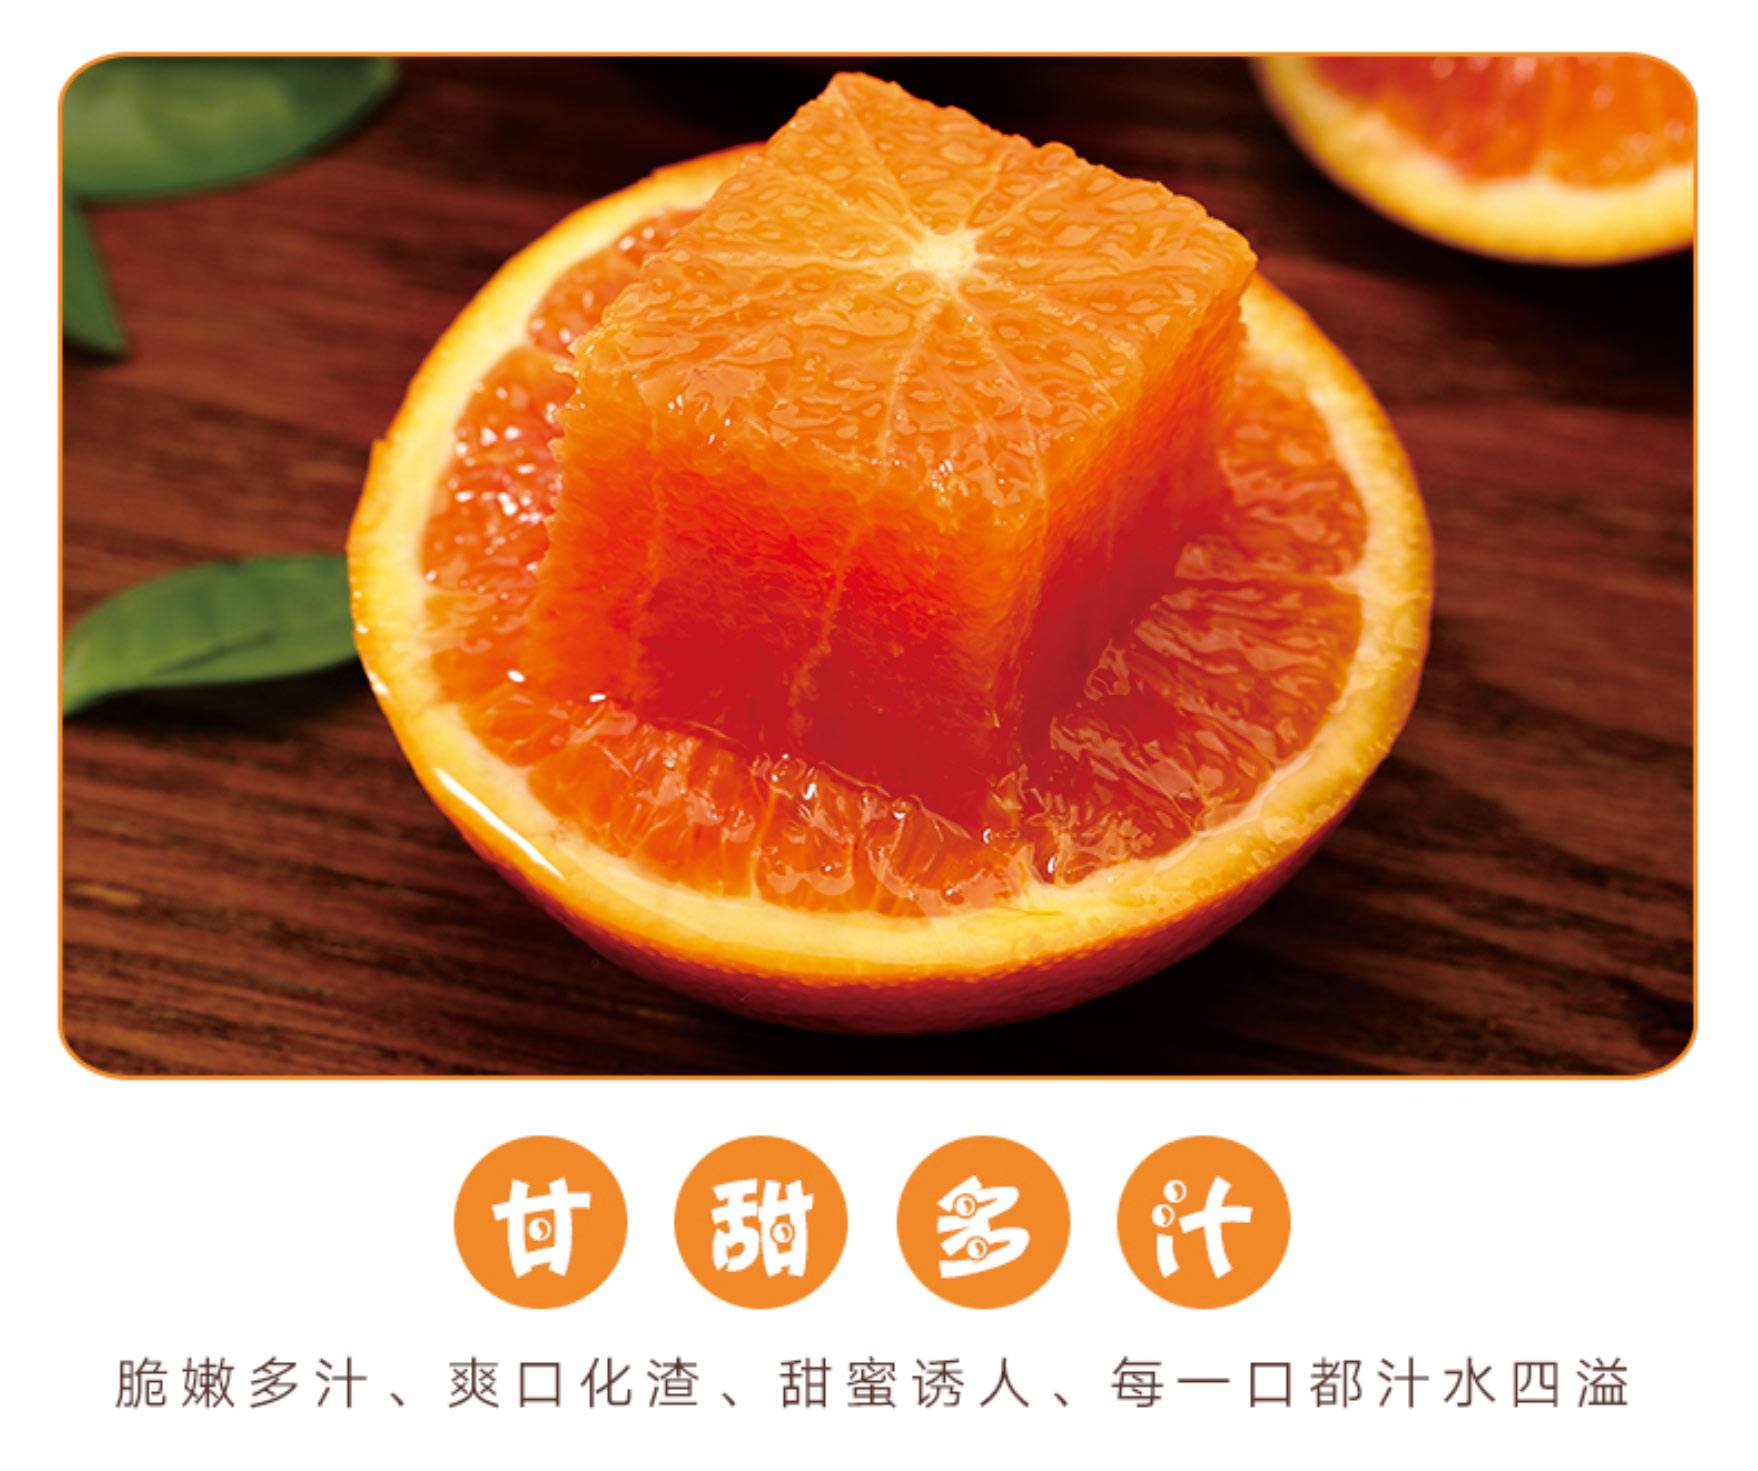 柑橘生产在长寿之乡彭山区，黄丰镇种橘子有近10多年...